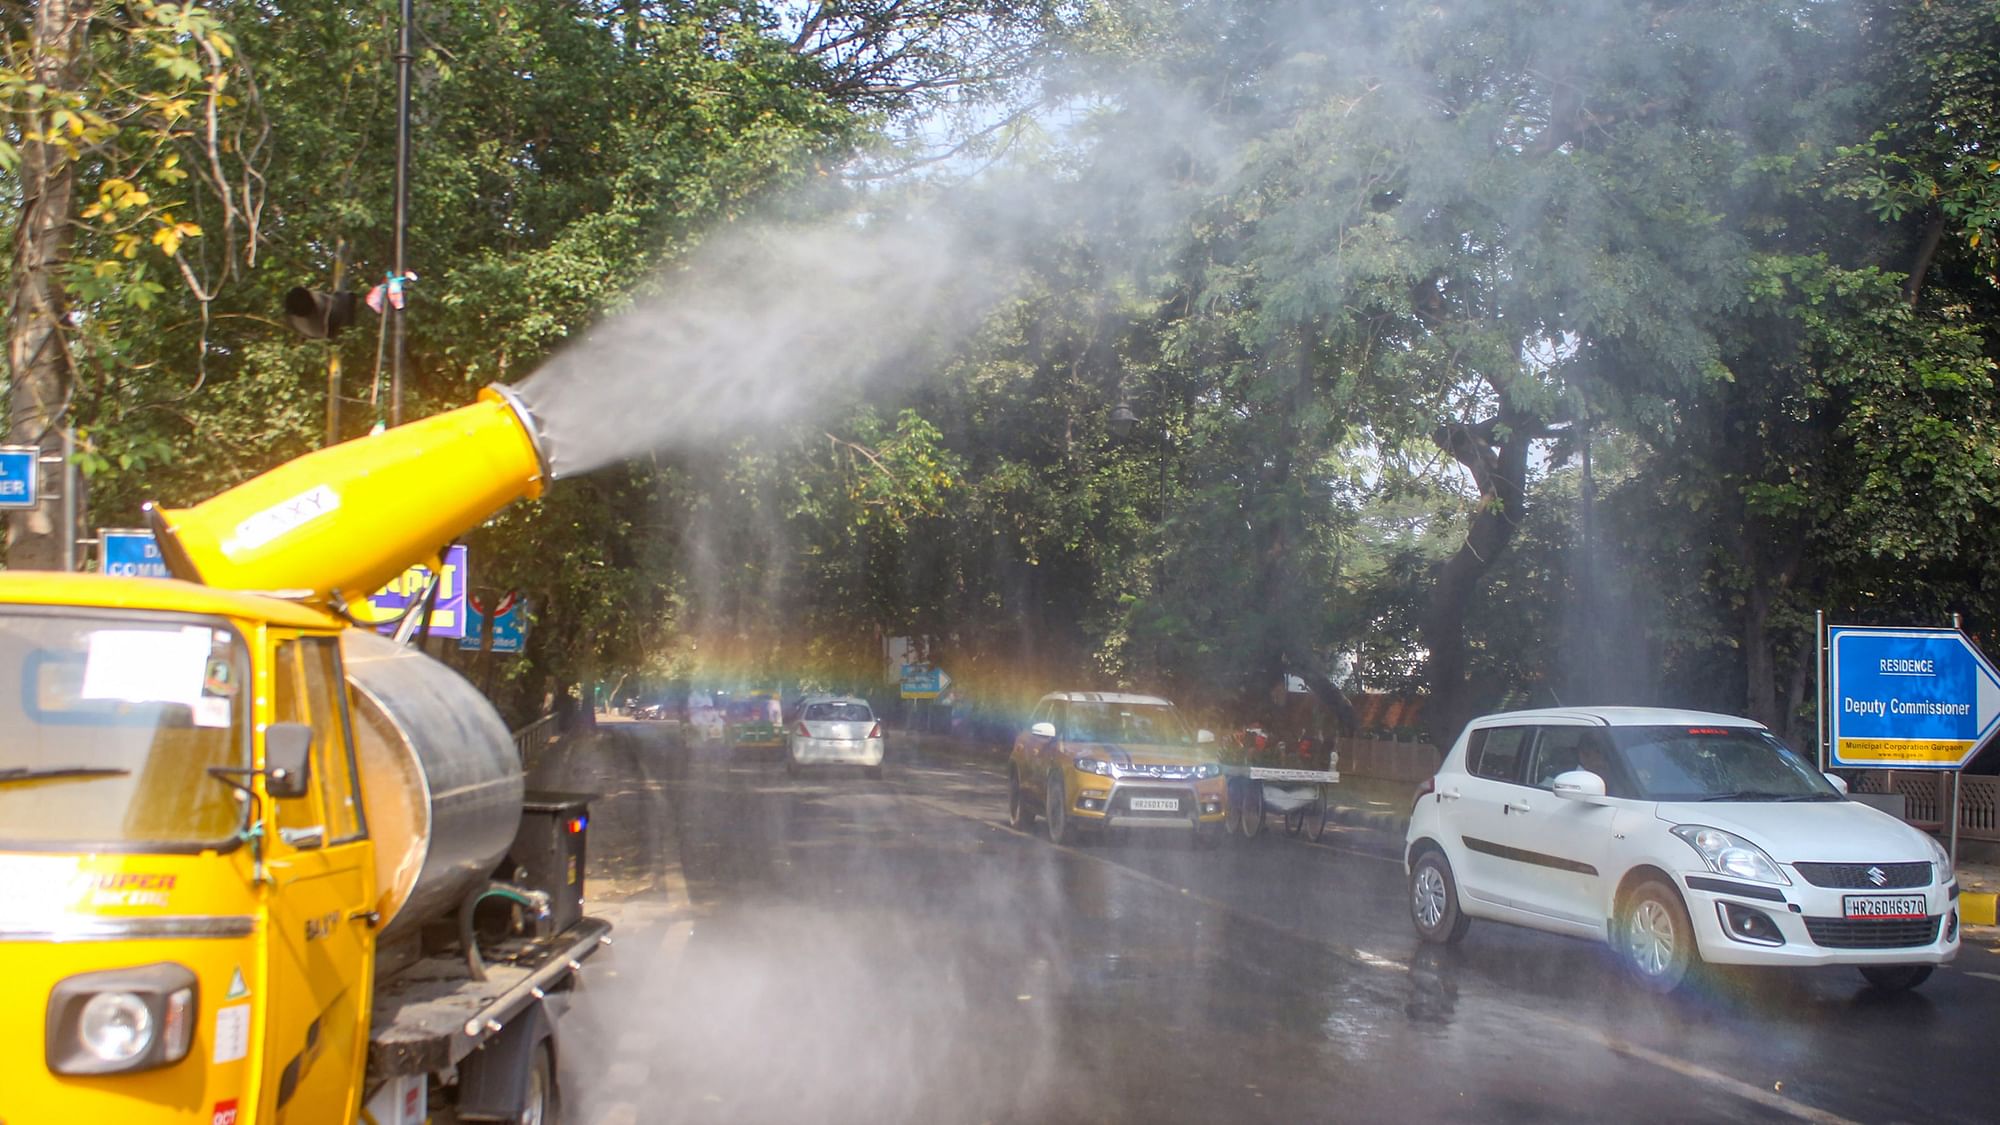 <div class="paragraphs"><p>An anti-smog gun sprays water droplets to curb air pollution, in Gurugram.</p></div>